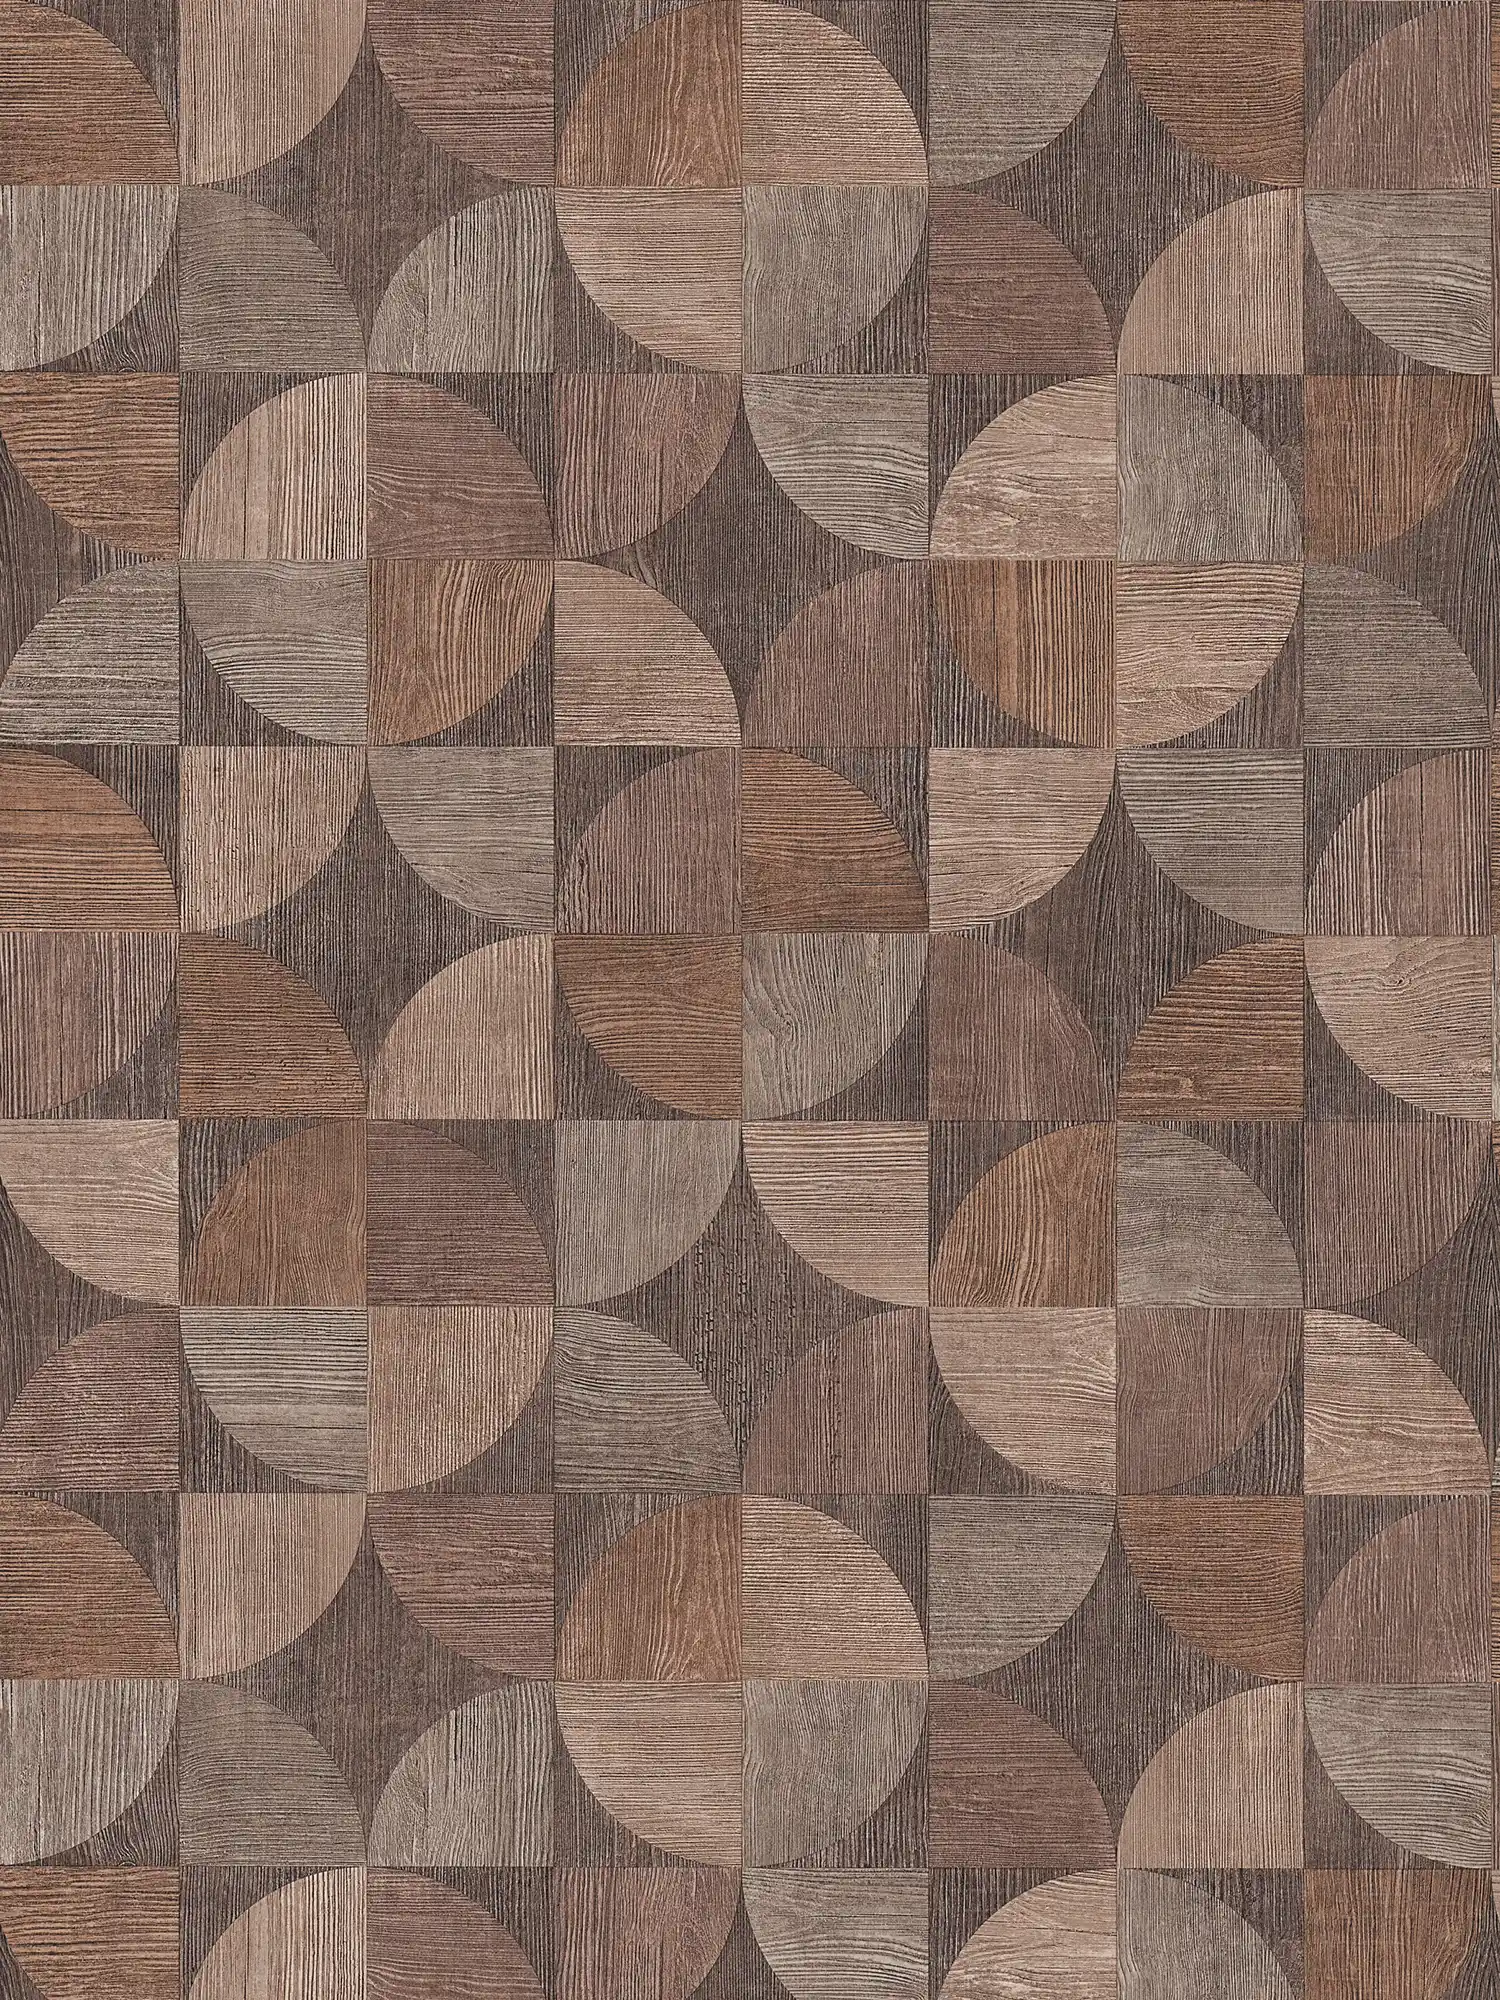 Tapete mit grafischem Muster in Holzoptik – Braun, Beige, Grau
